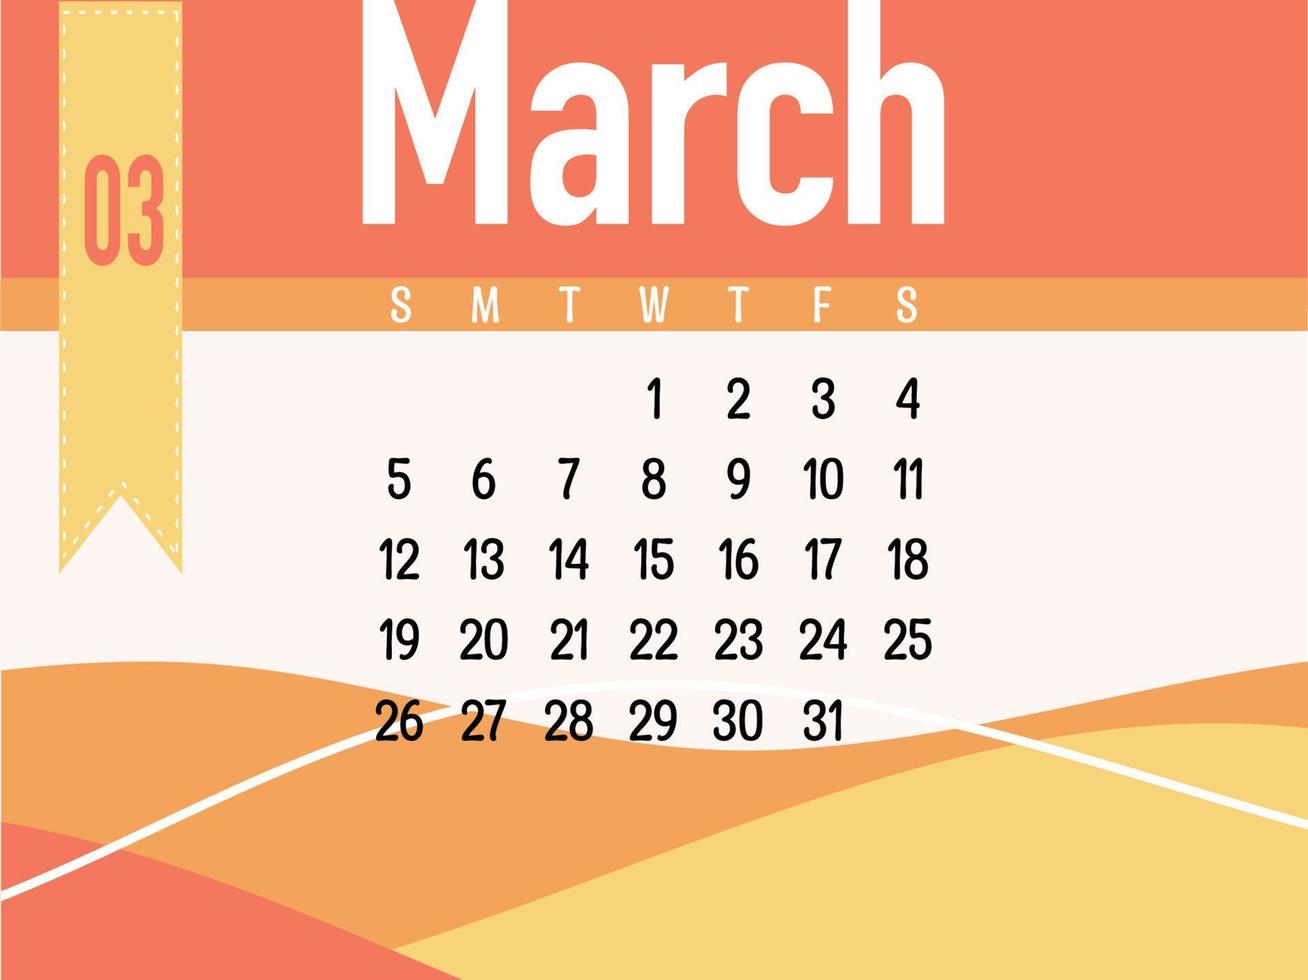 March calendar vector